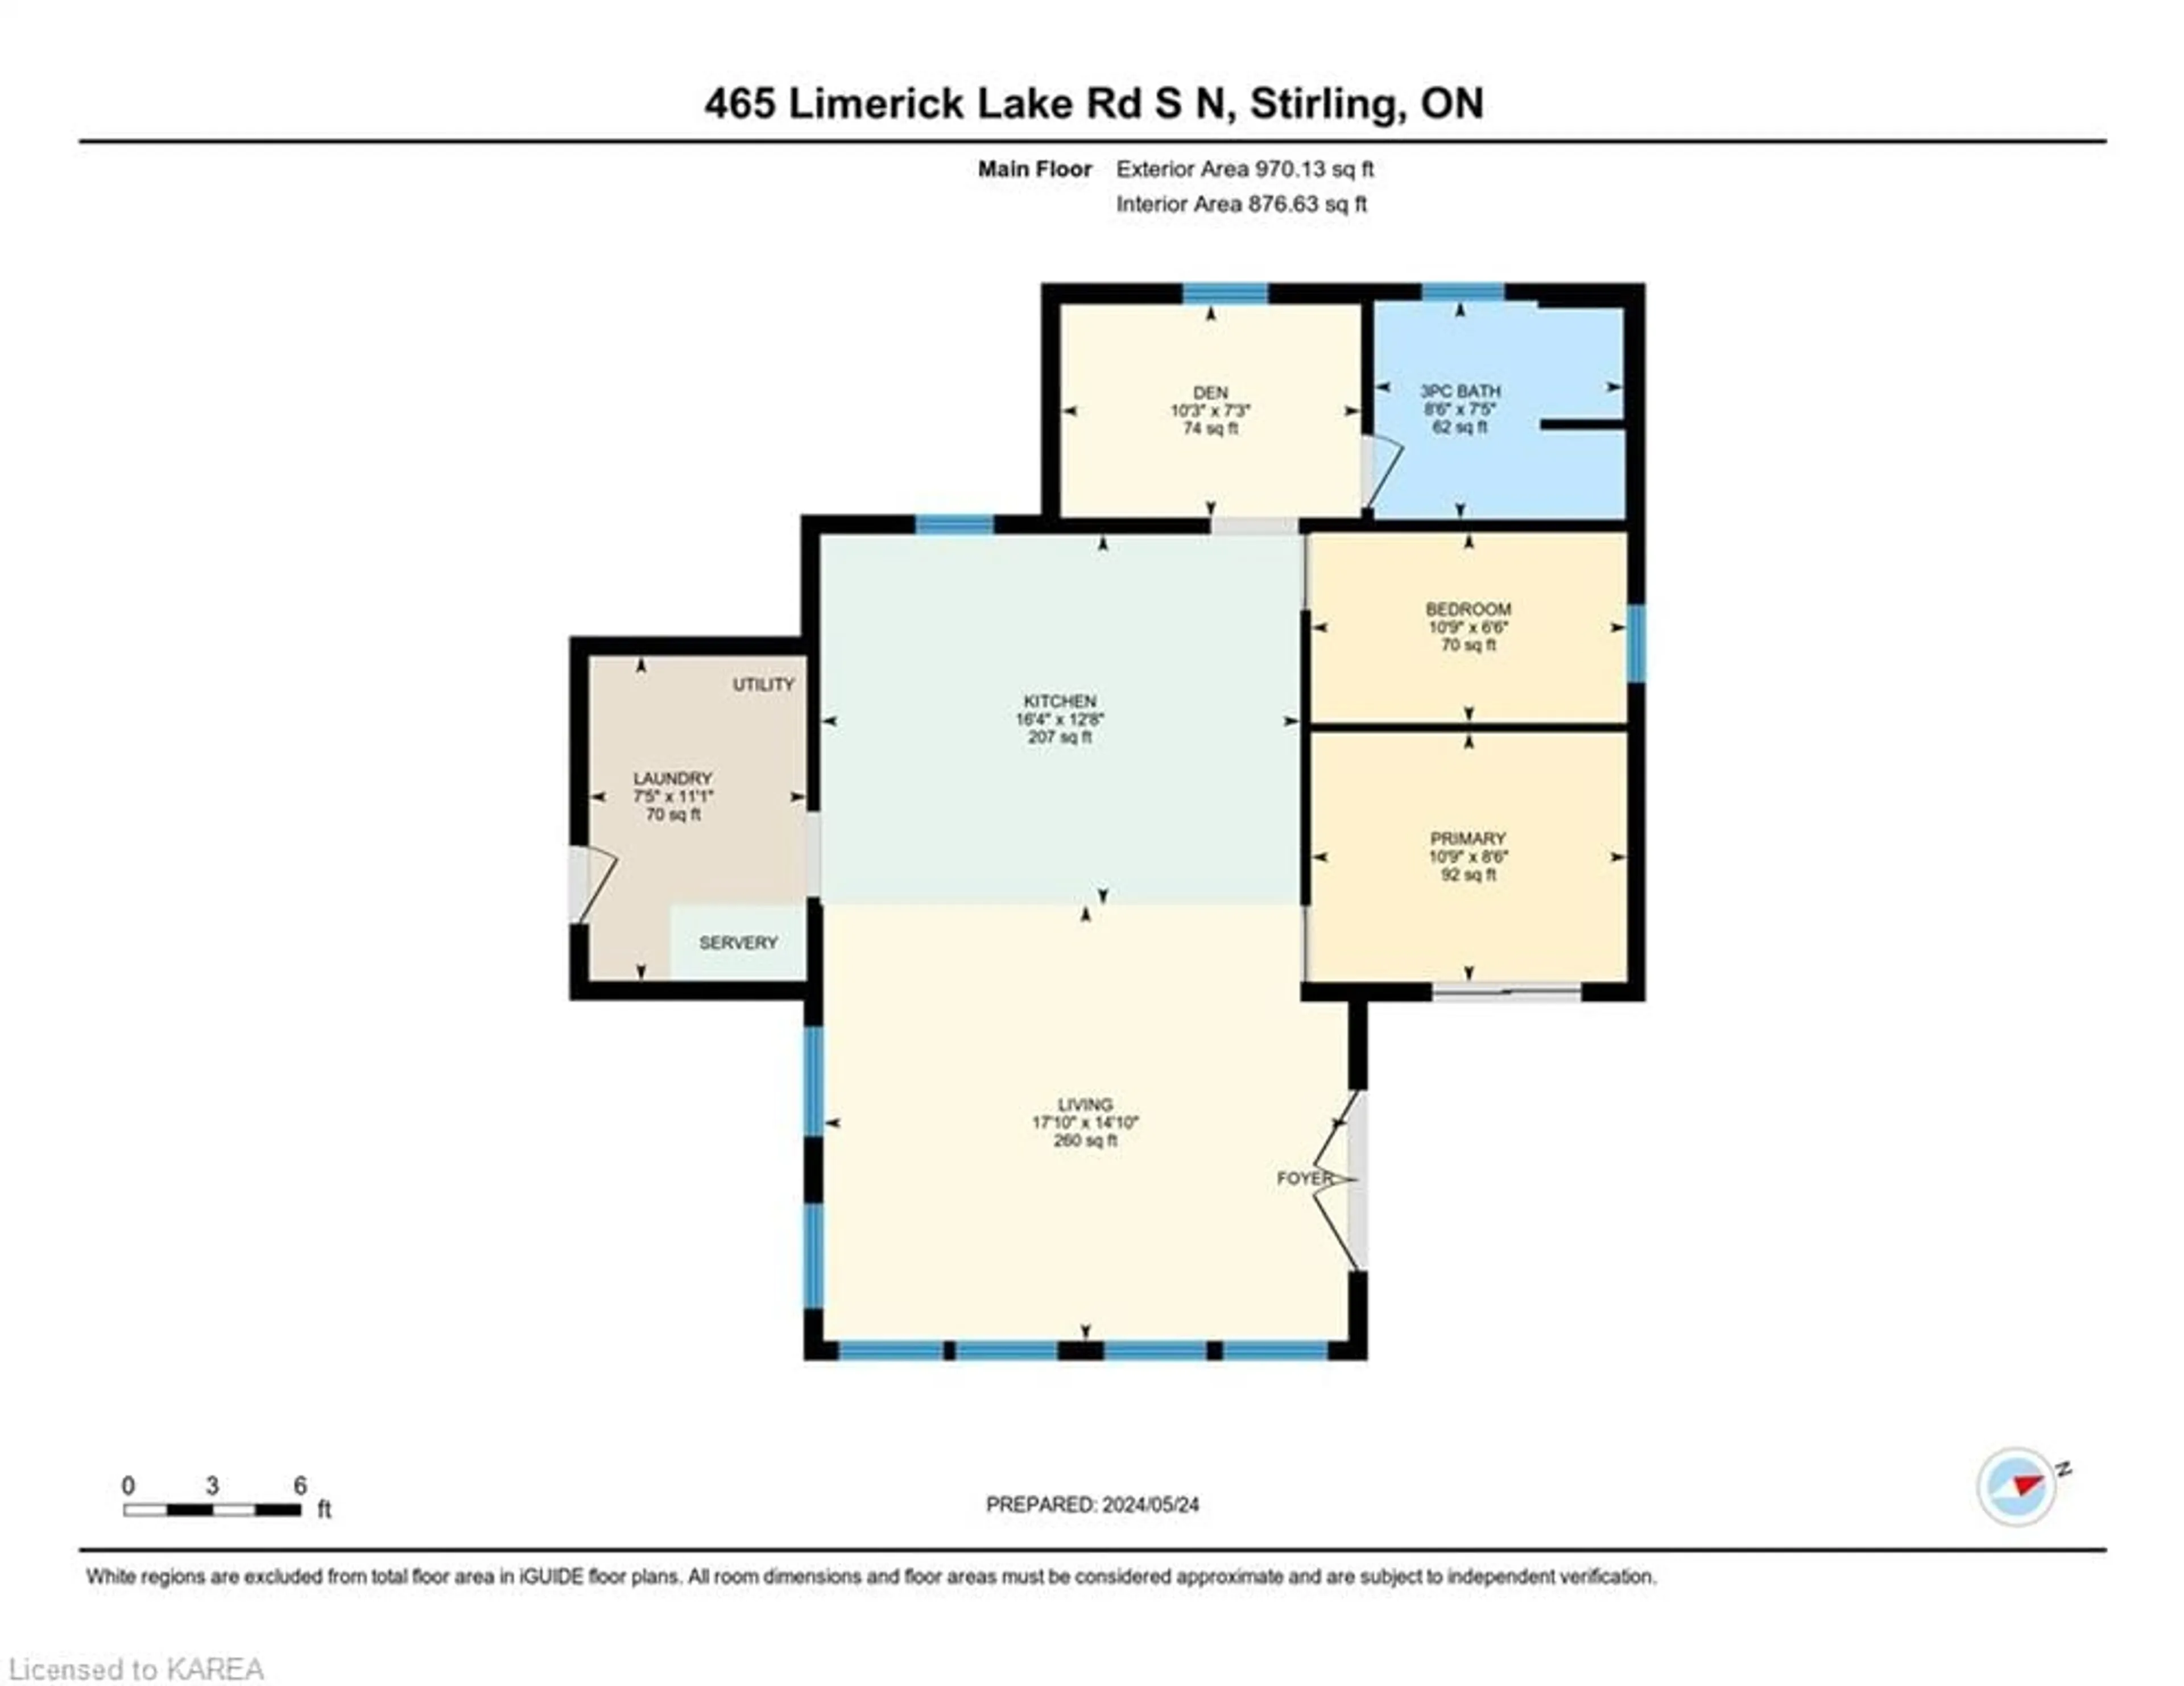 Floor plan for 465 Limerick Lk S N Rd, Limerick Ontario K0L 1W0